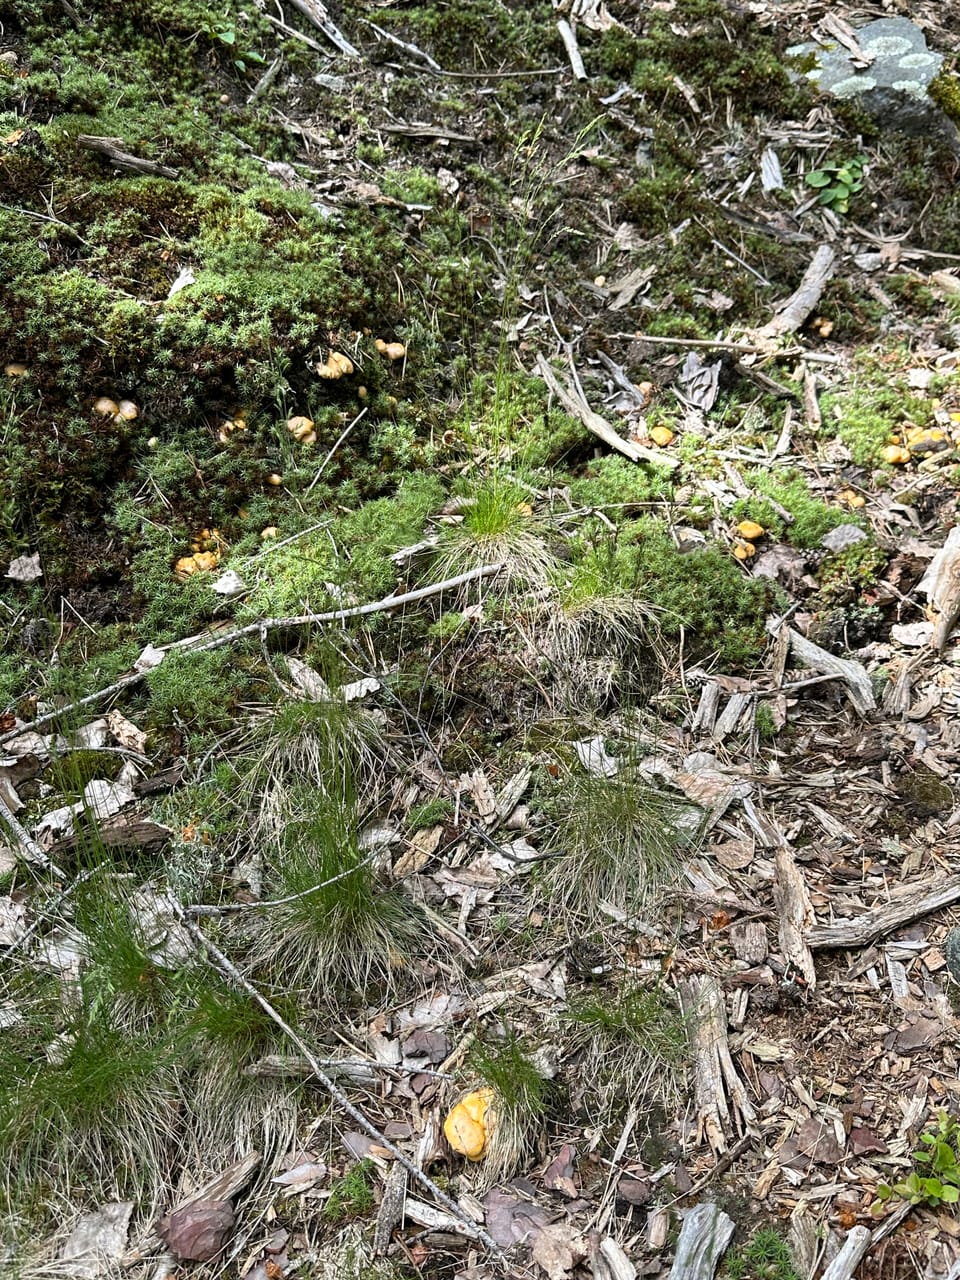 Waldgebiet mit grünen Moosen und verstreuten Pilzen auf dem Boden.